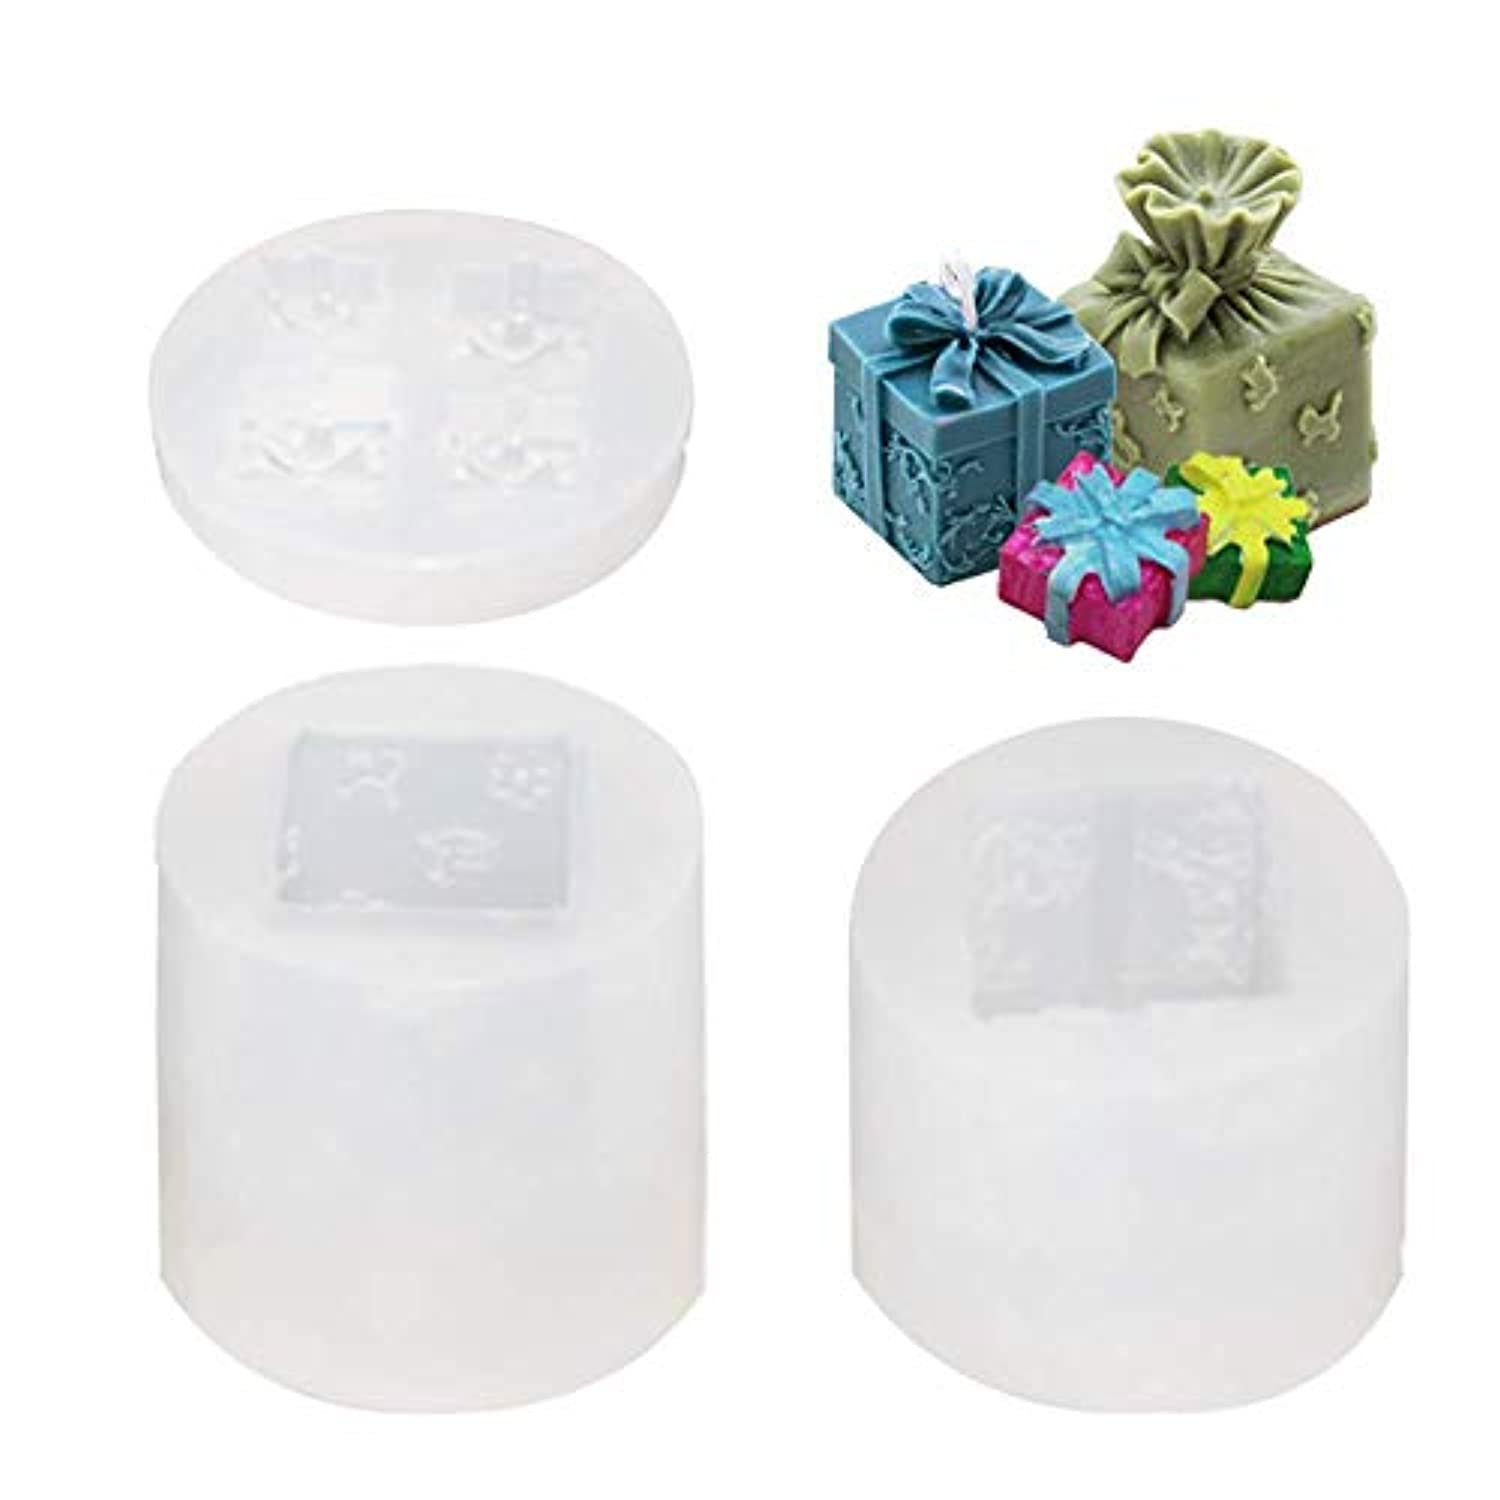 2 piezas de caja de regalo de silicona para velas de jabón, moldes de  fondant, molde de caramelo de chocolate, molde de resina epoxi para hacer  velas